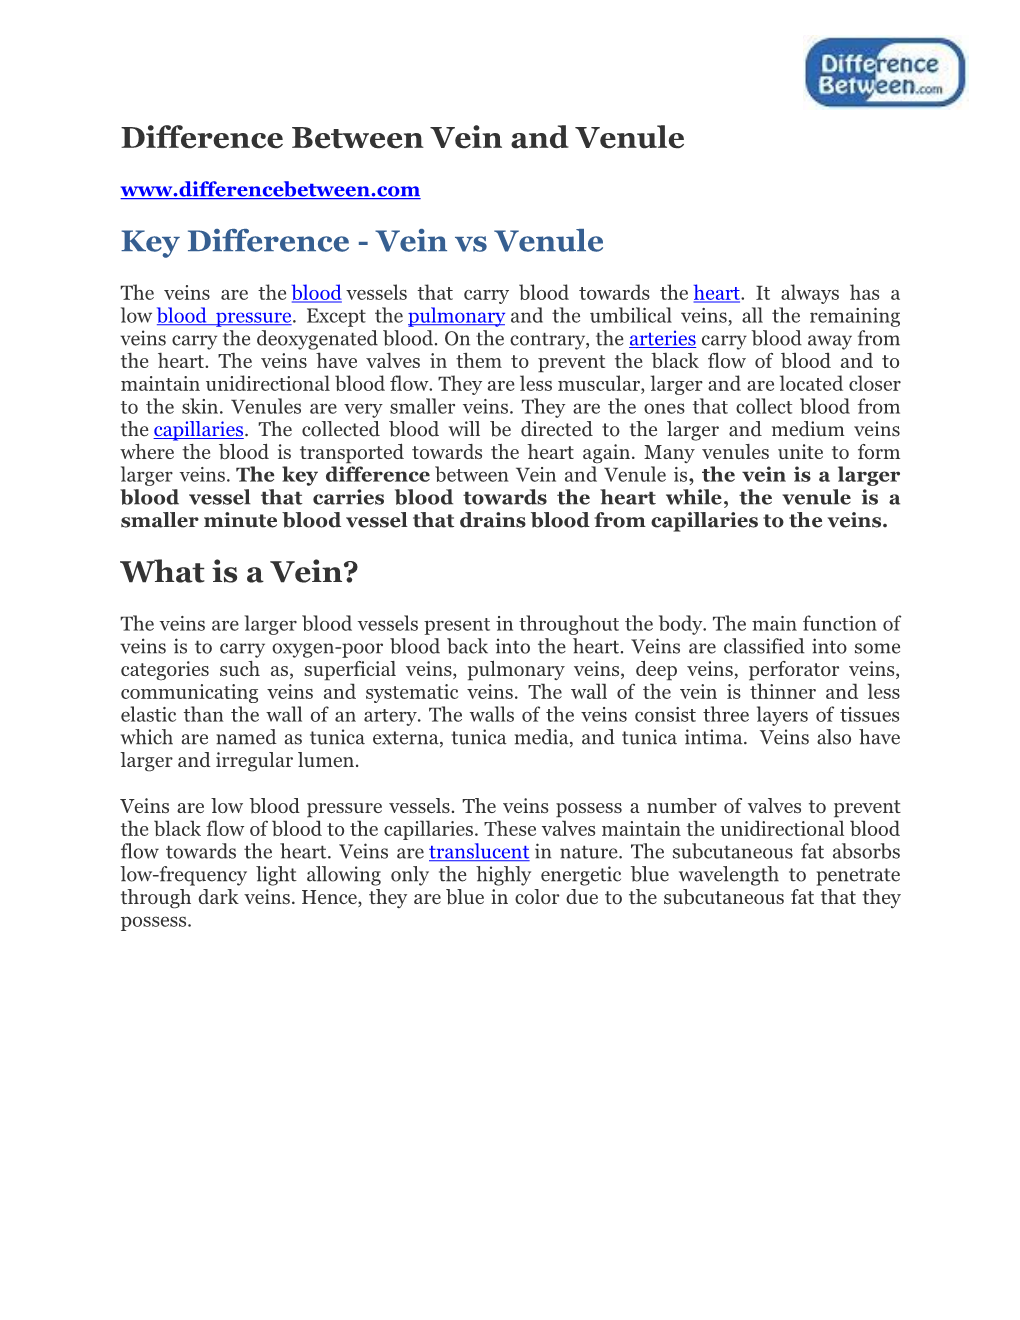 Difference Between Vein and Venule Key Difference - Vein Vs Venule